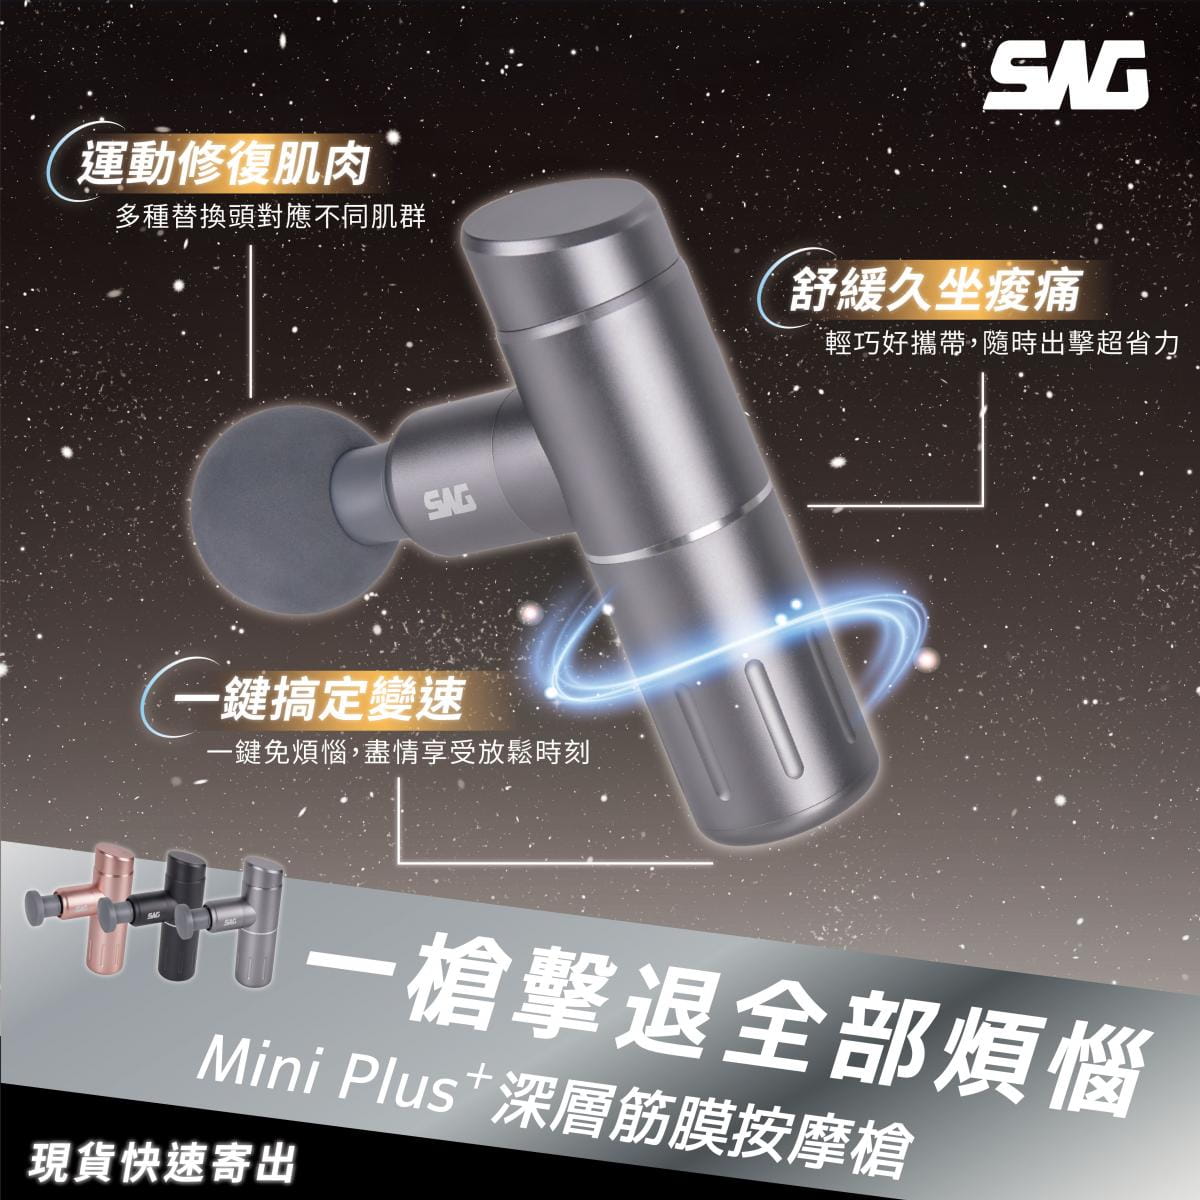 【SWG】Mini Plus+ 深層筋膜按摩槍 0